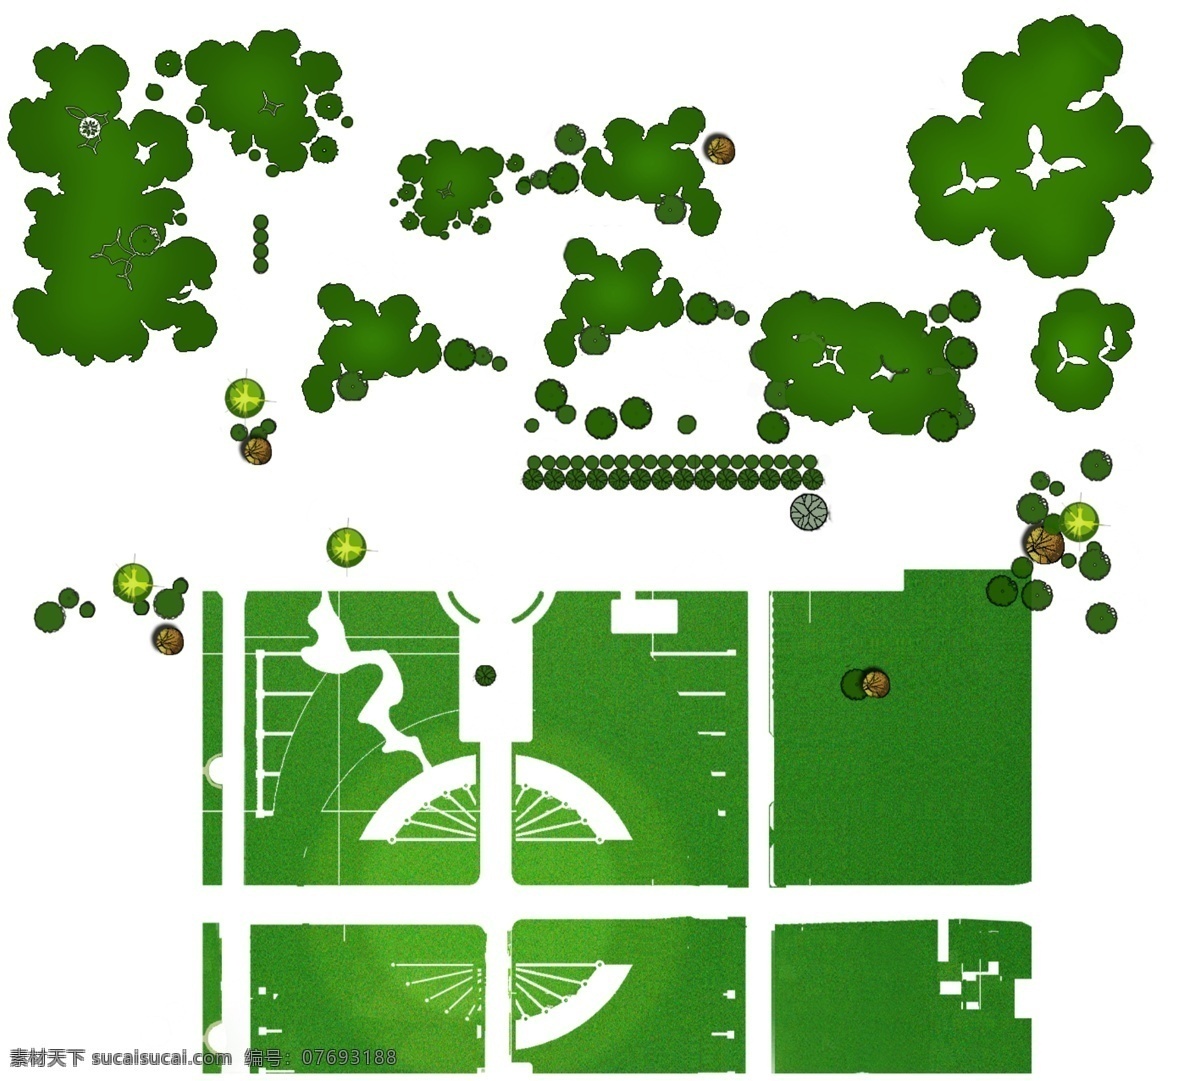 景观设计常用 植物 ps景 ps景观 总平面图素材 景观设计 风景园林 彩平素材 植物图例 平面树 分层 源文件